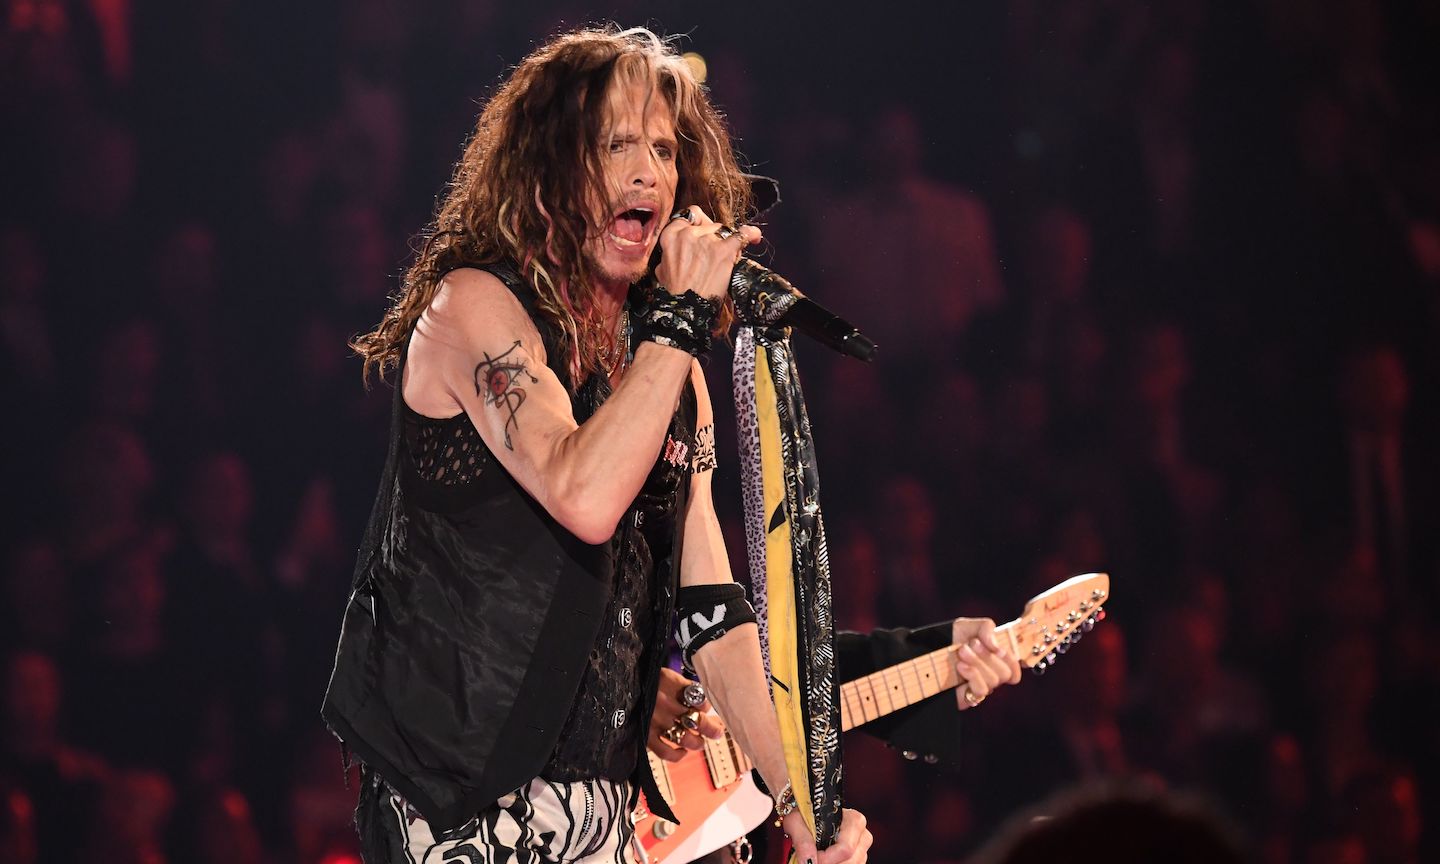 Aerosmith announces 40-city 'farewell tour